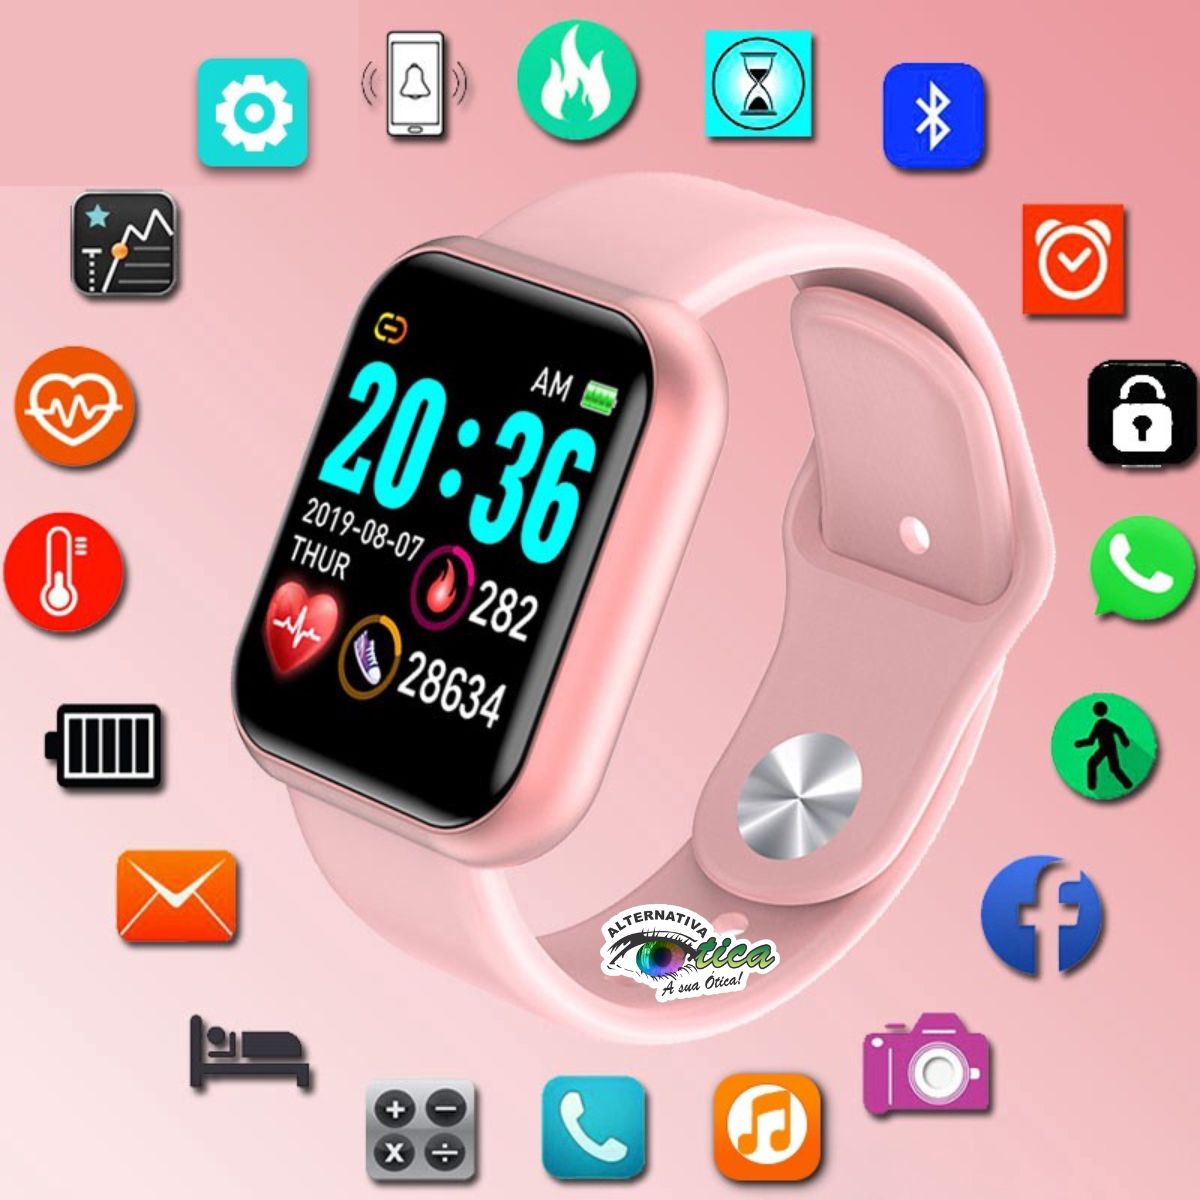 Smartwatch Y68 como conectar com aplicativo .Fitpro. 